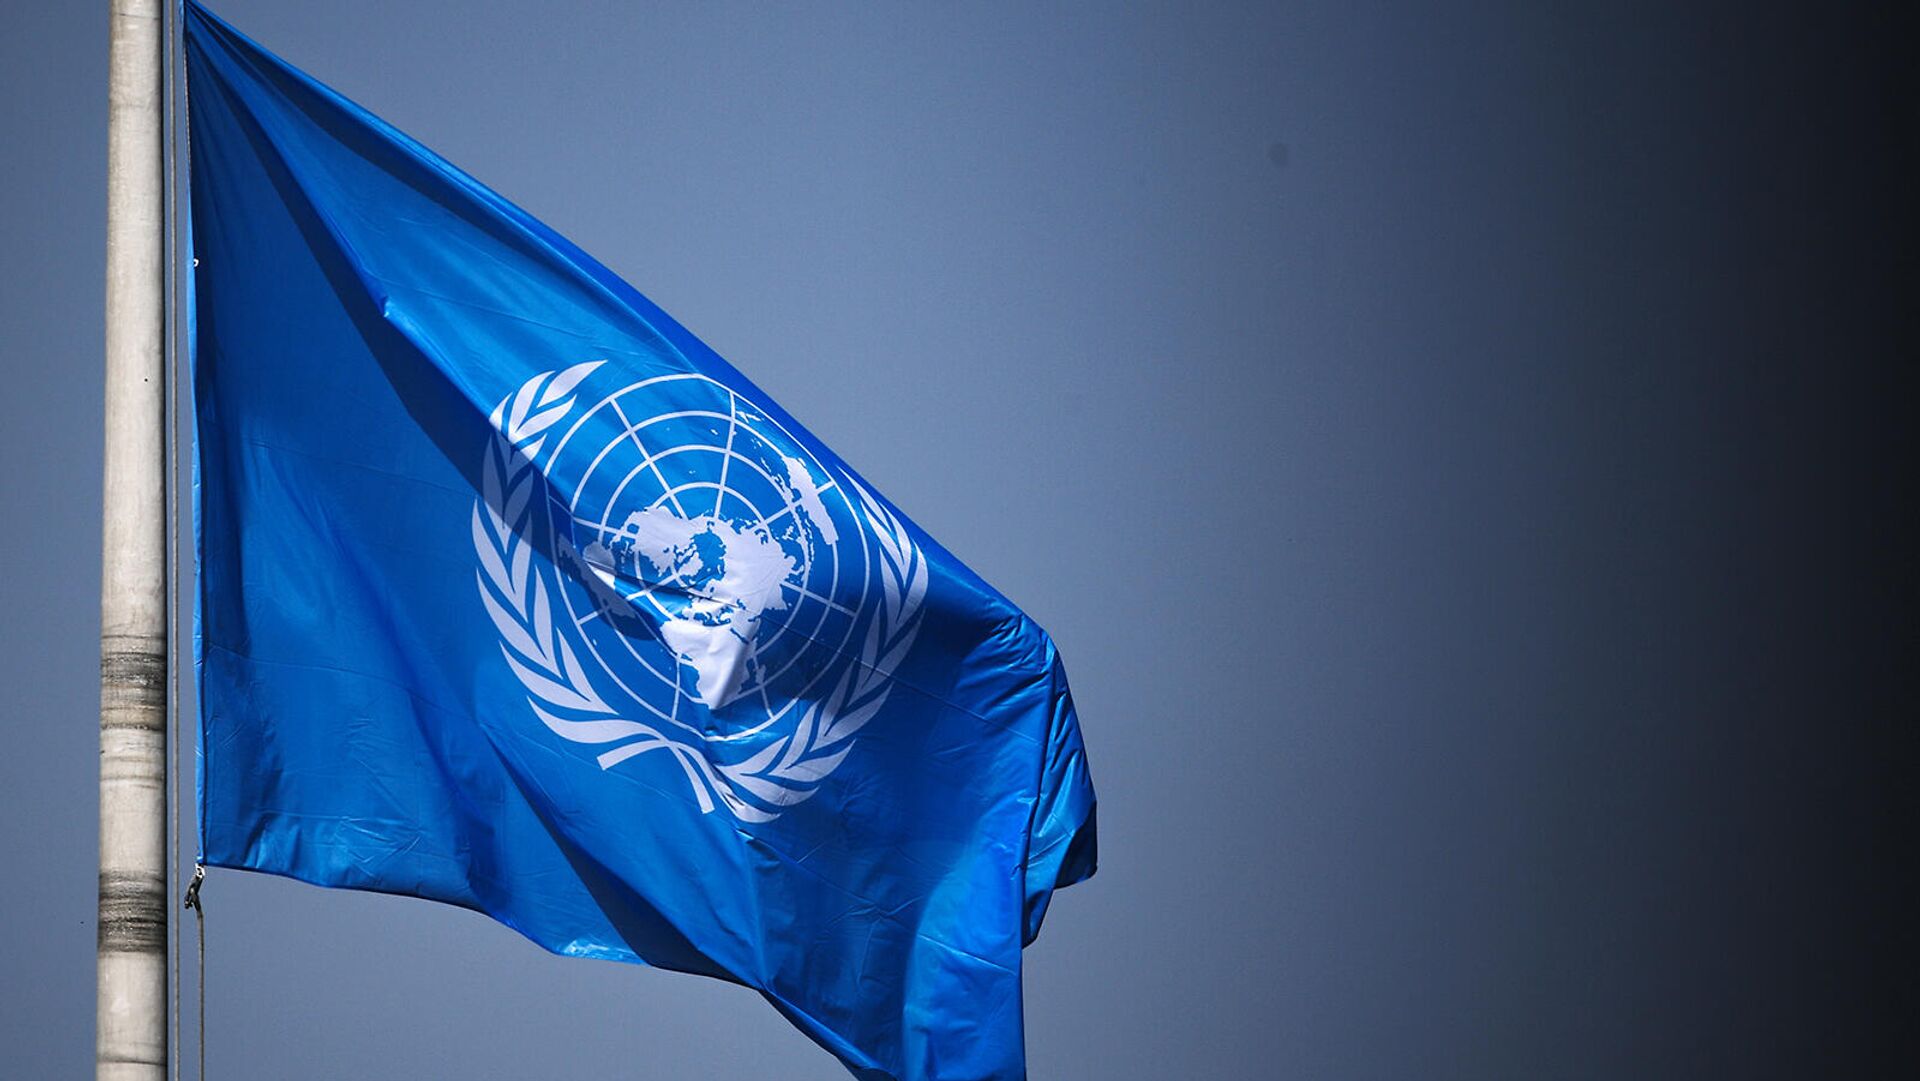 ՄԱԿ-ի դրոշը Հաագայի Խաղաղության պալատի տարածքում - Sputnik Արմենիա, 1920, 22.09.2021